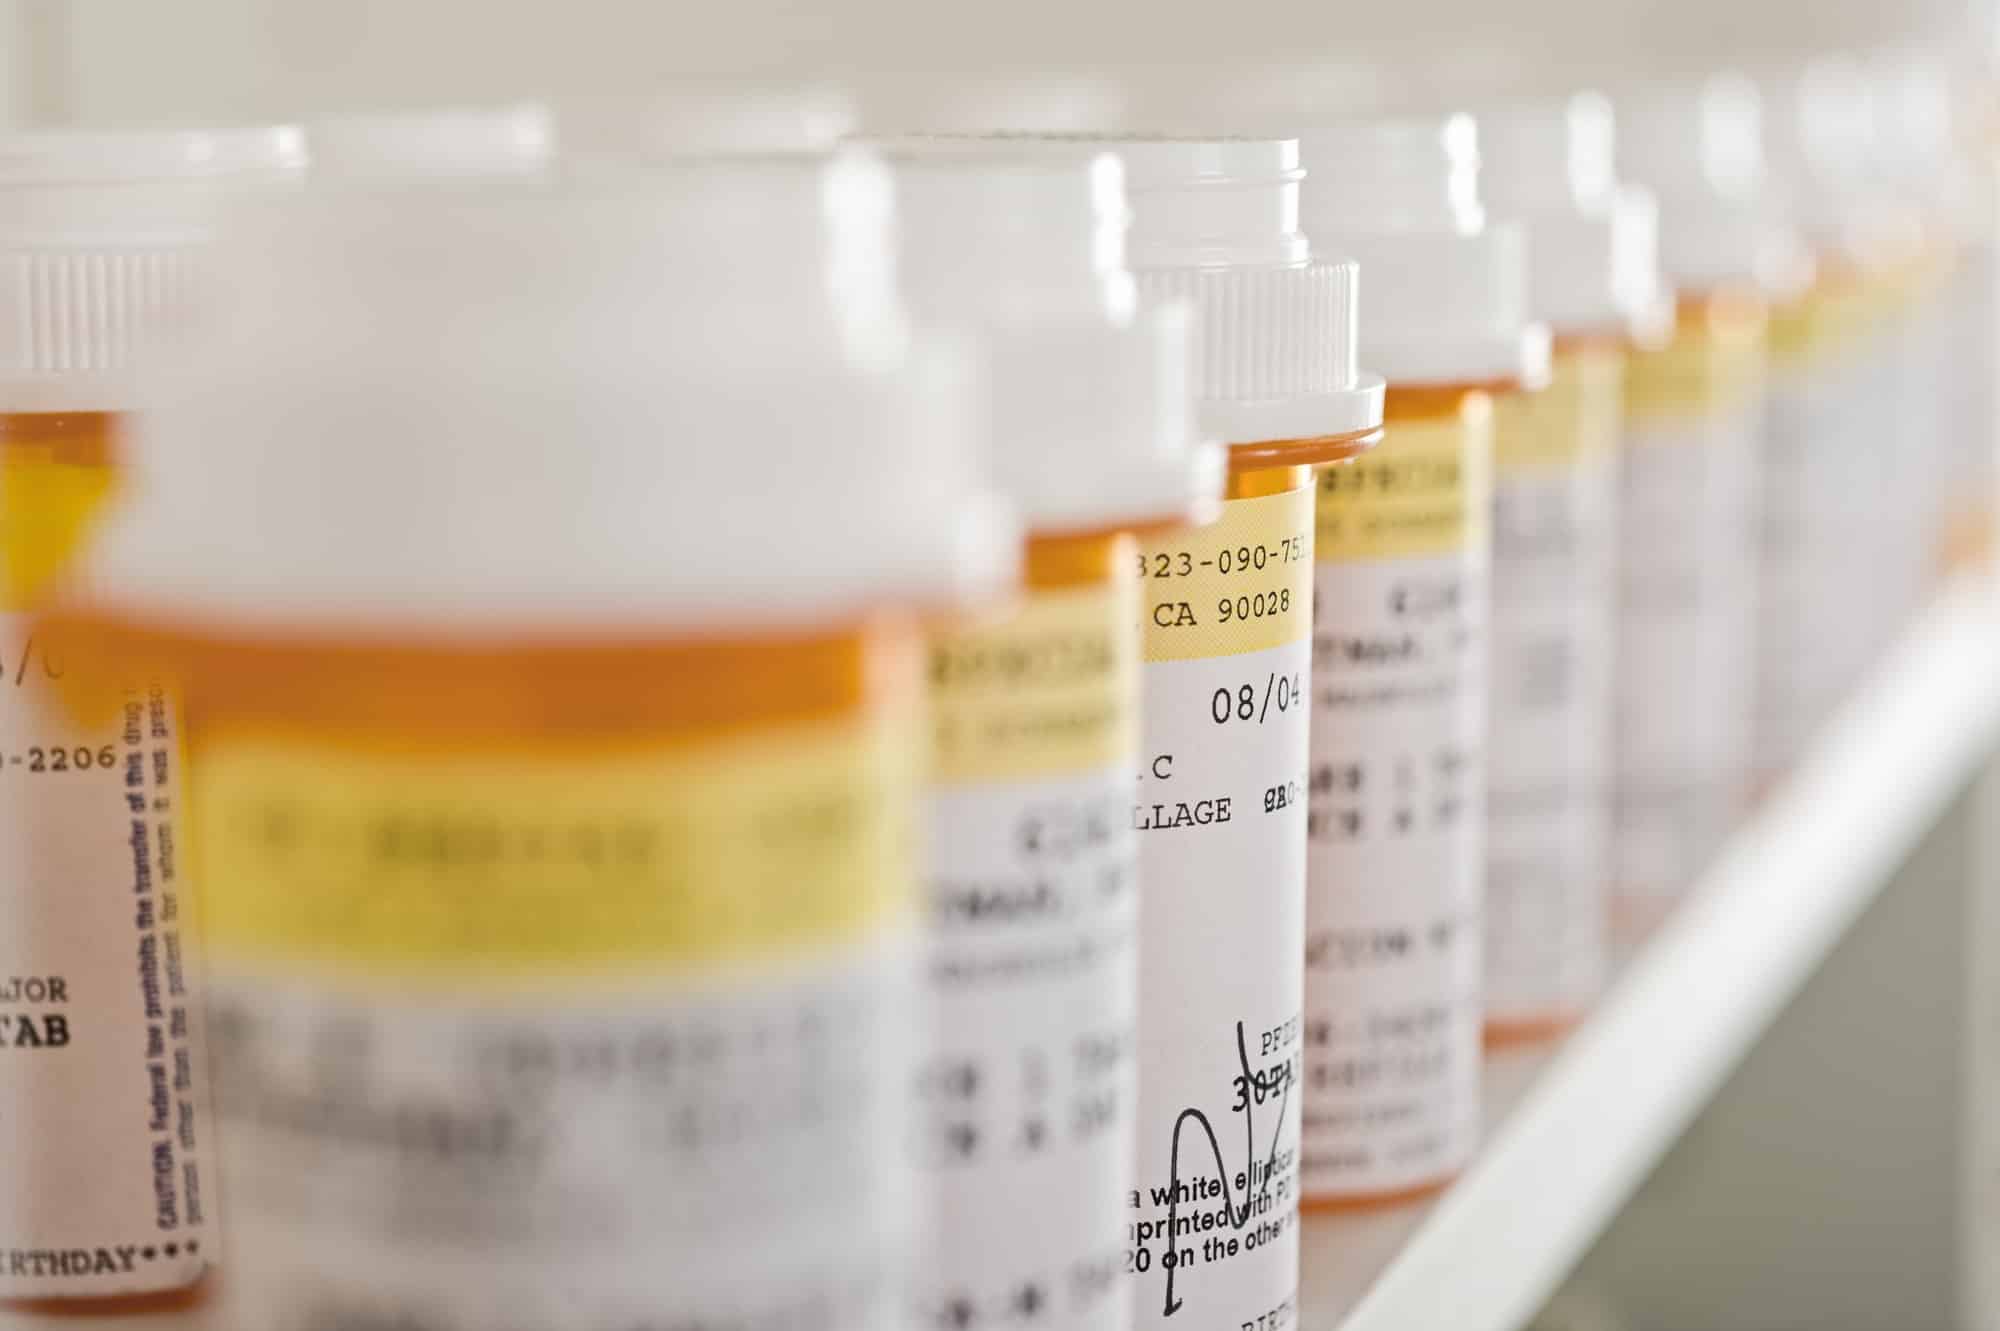 Prescription medication bottles lined up on a shelf.